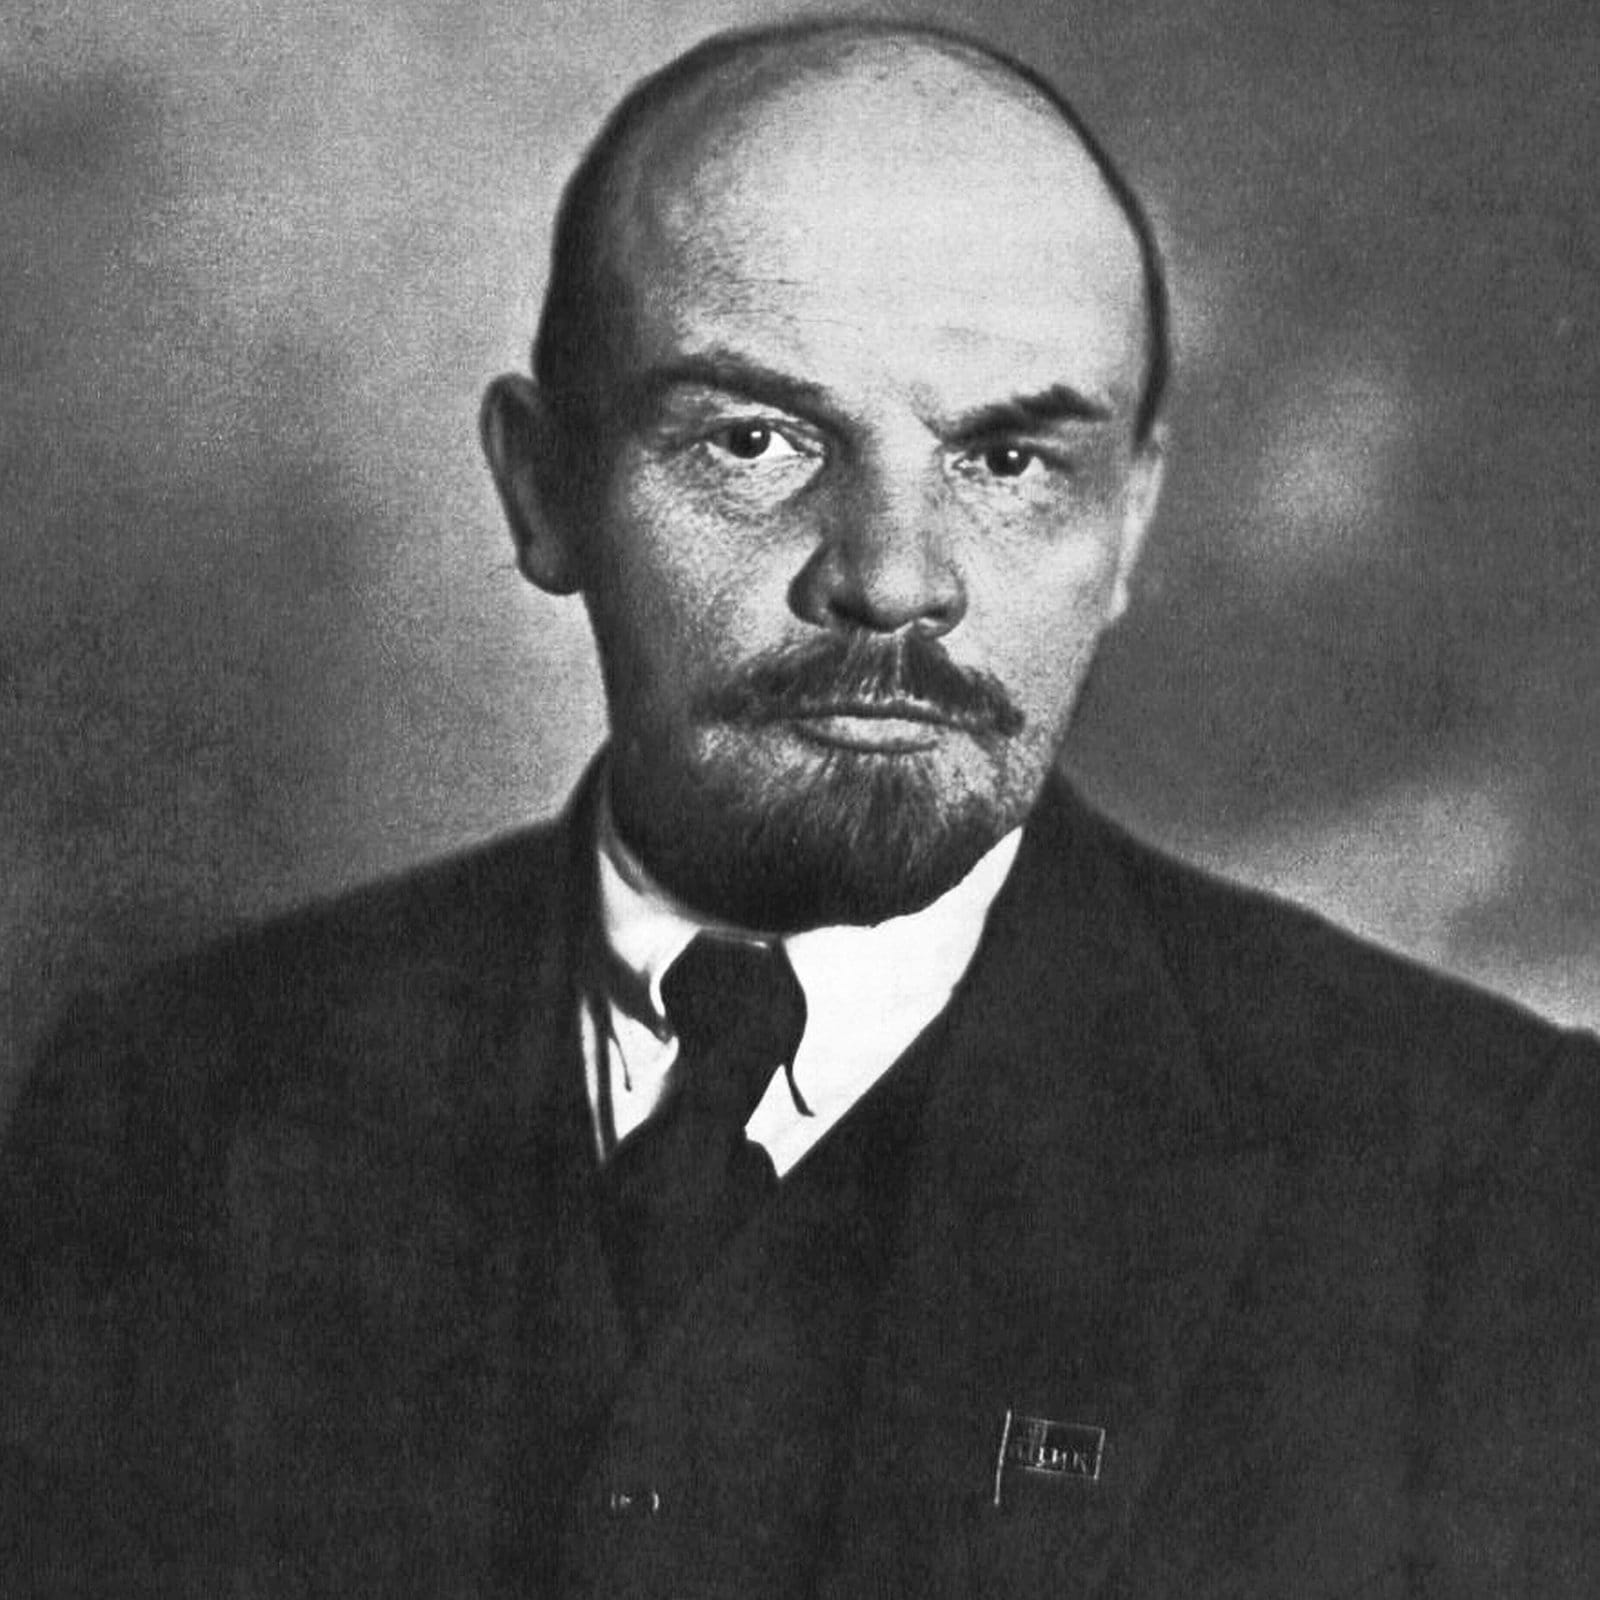 Geschichten aus Sachsen-Anhalt: Lenins Zug stoppt in Halle